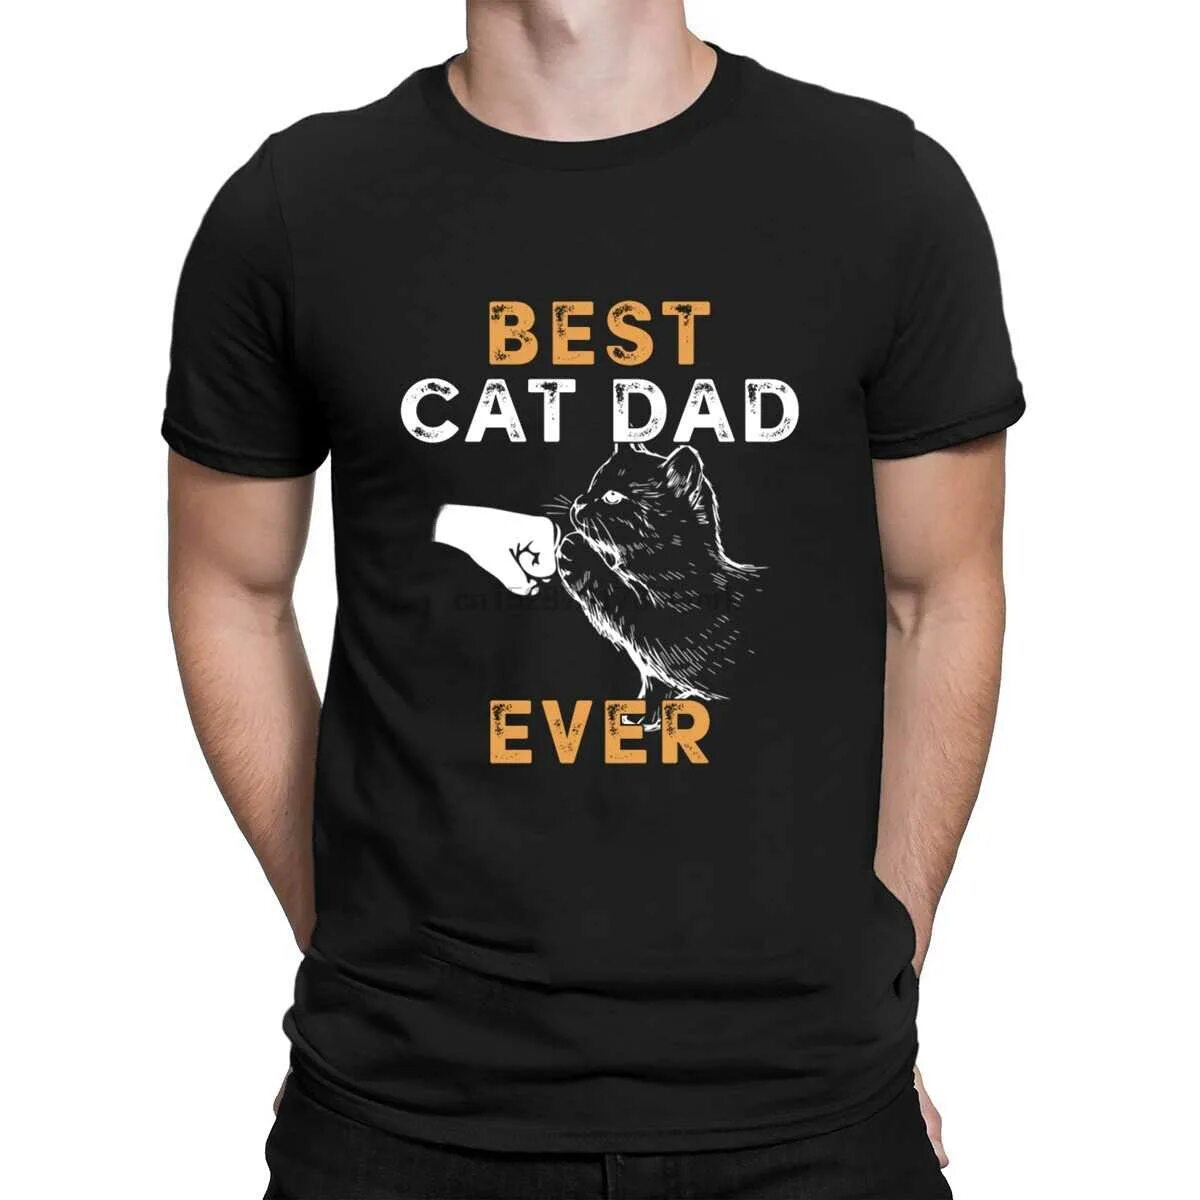 Cat daddy. Best dad ever футболка. Футболка Cat dad. Best Cat dad ever.